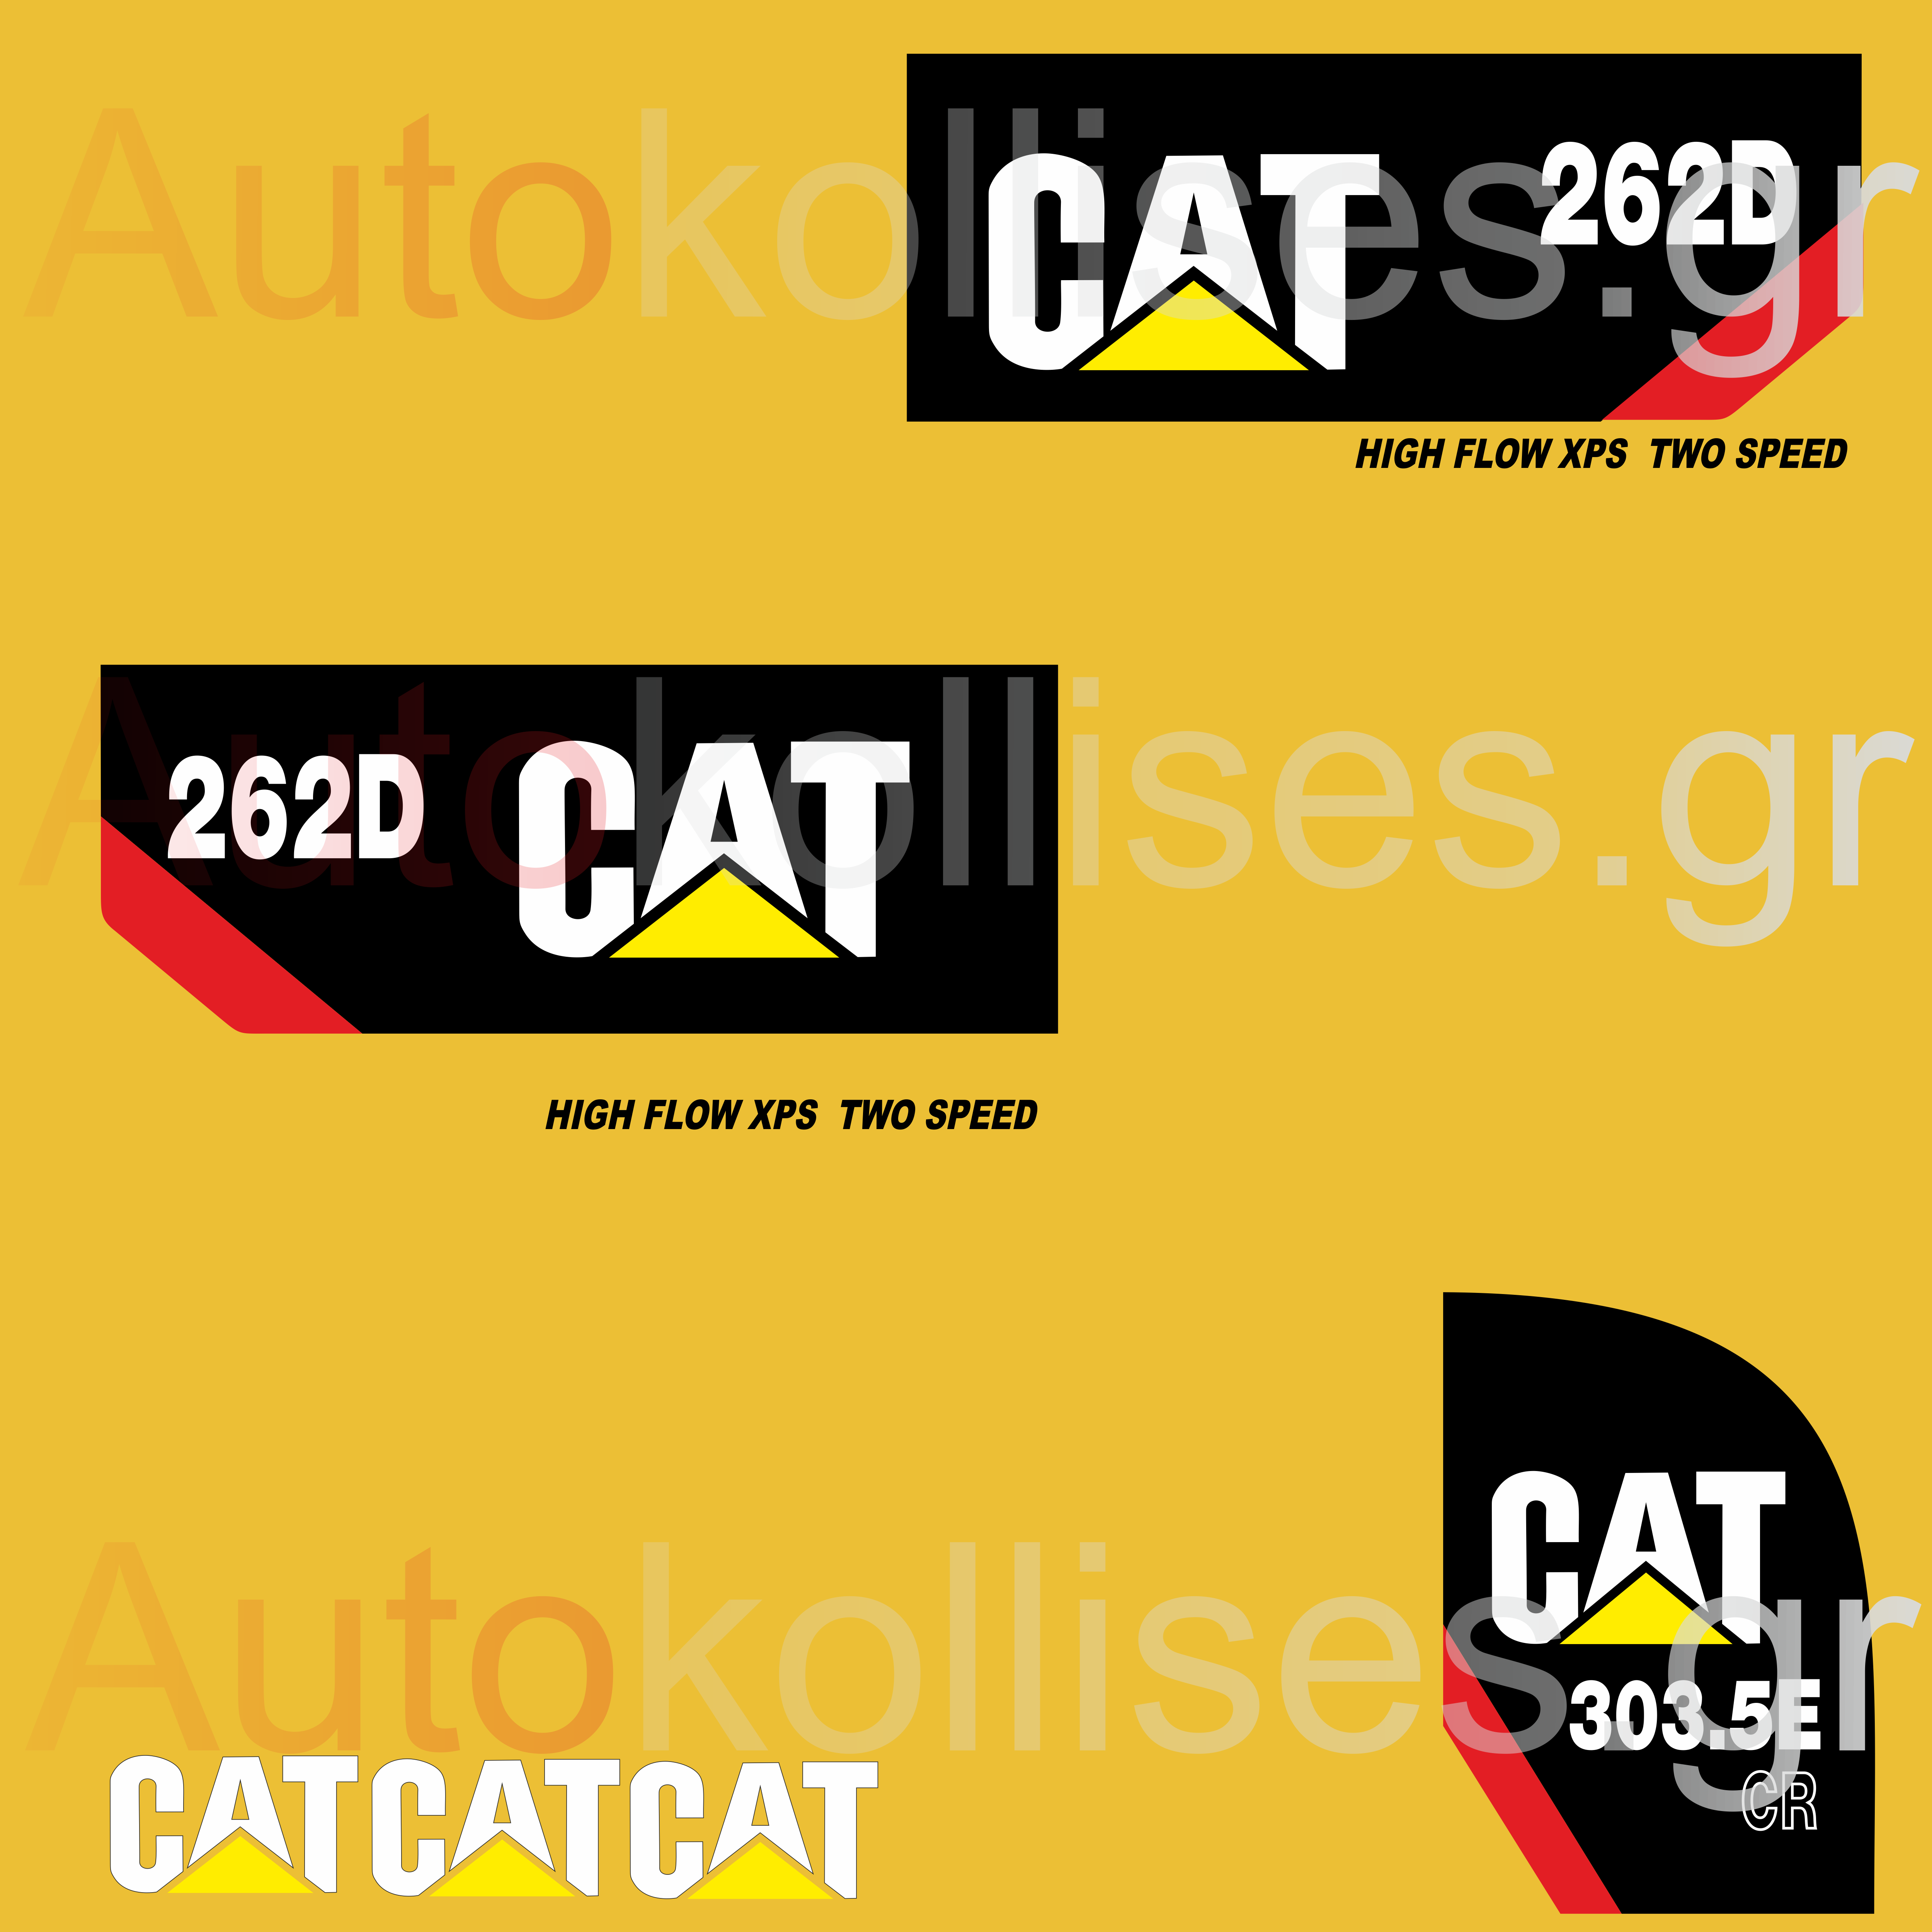 CAT262D